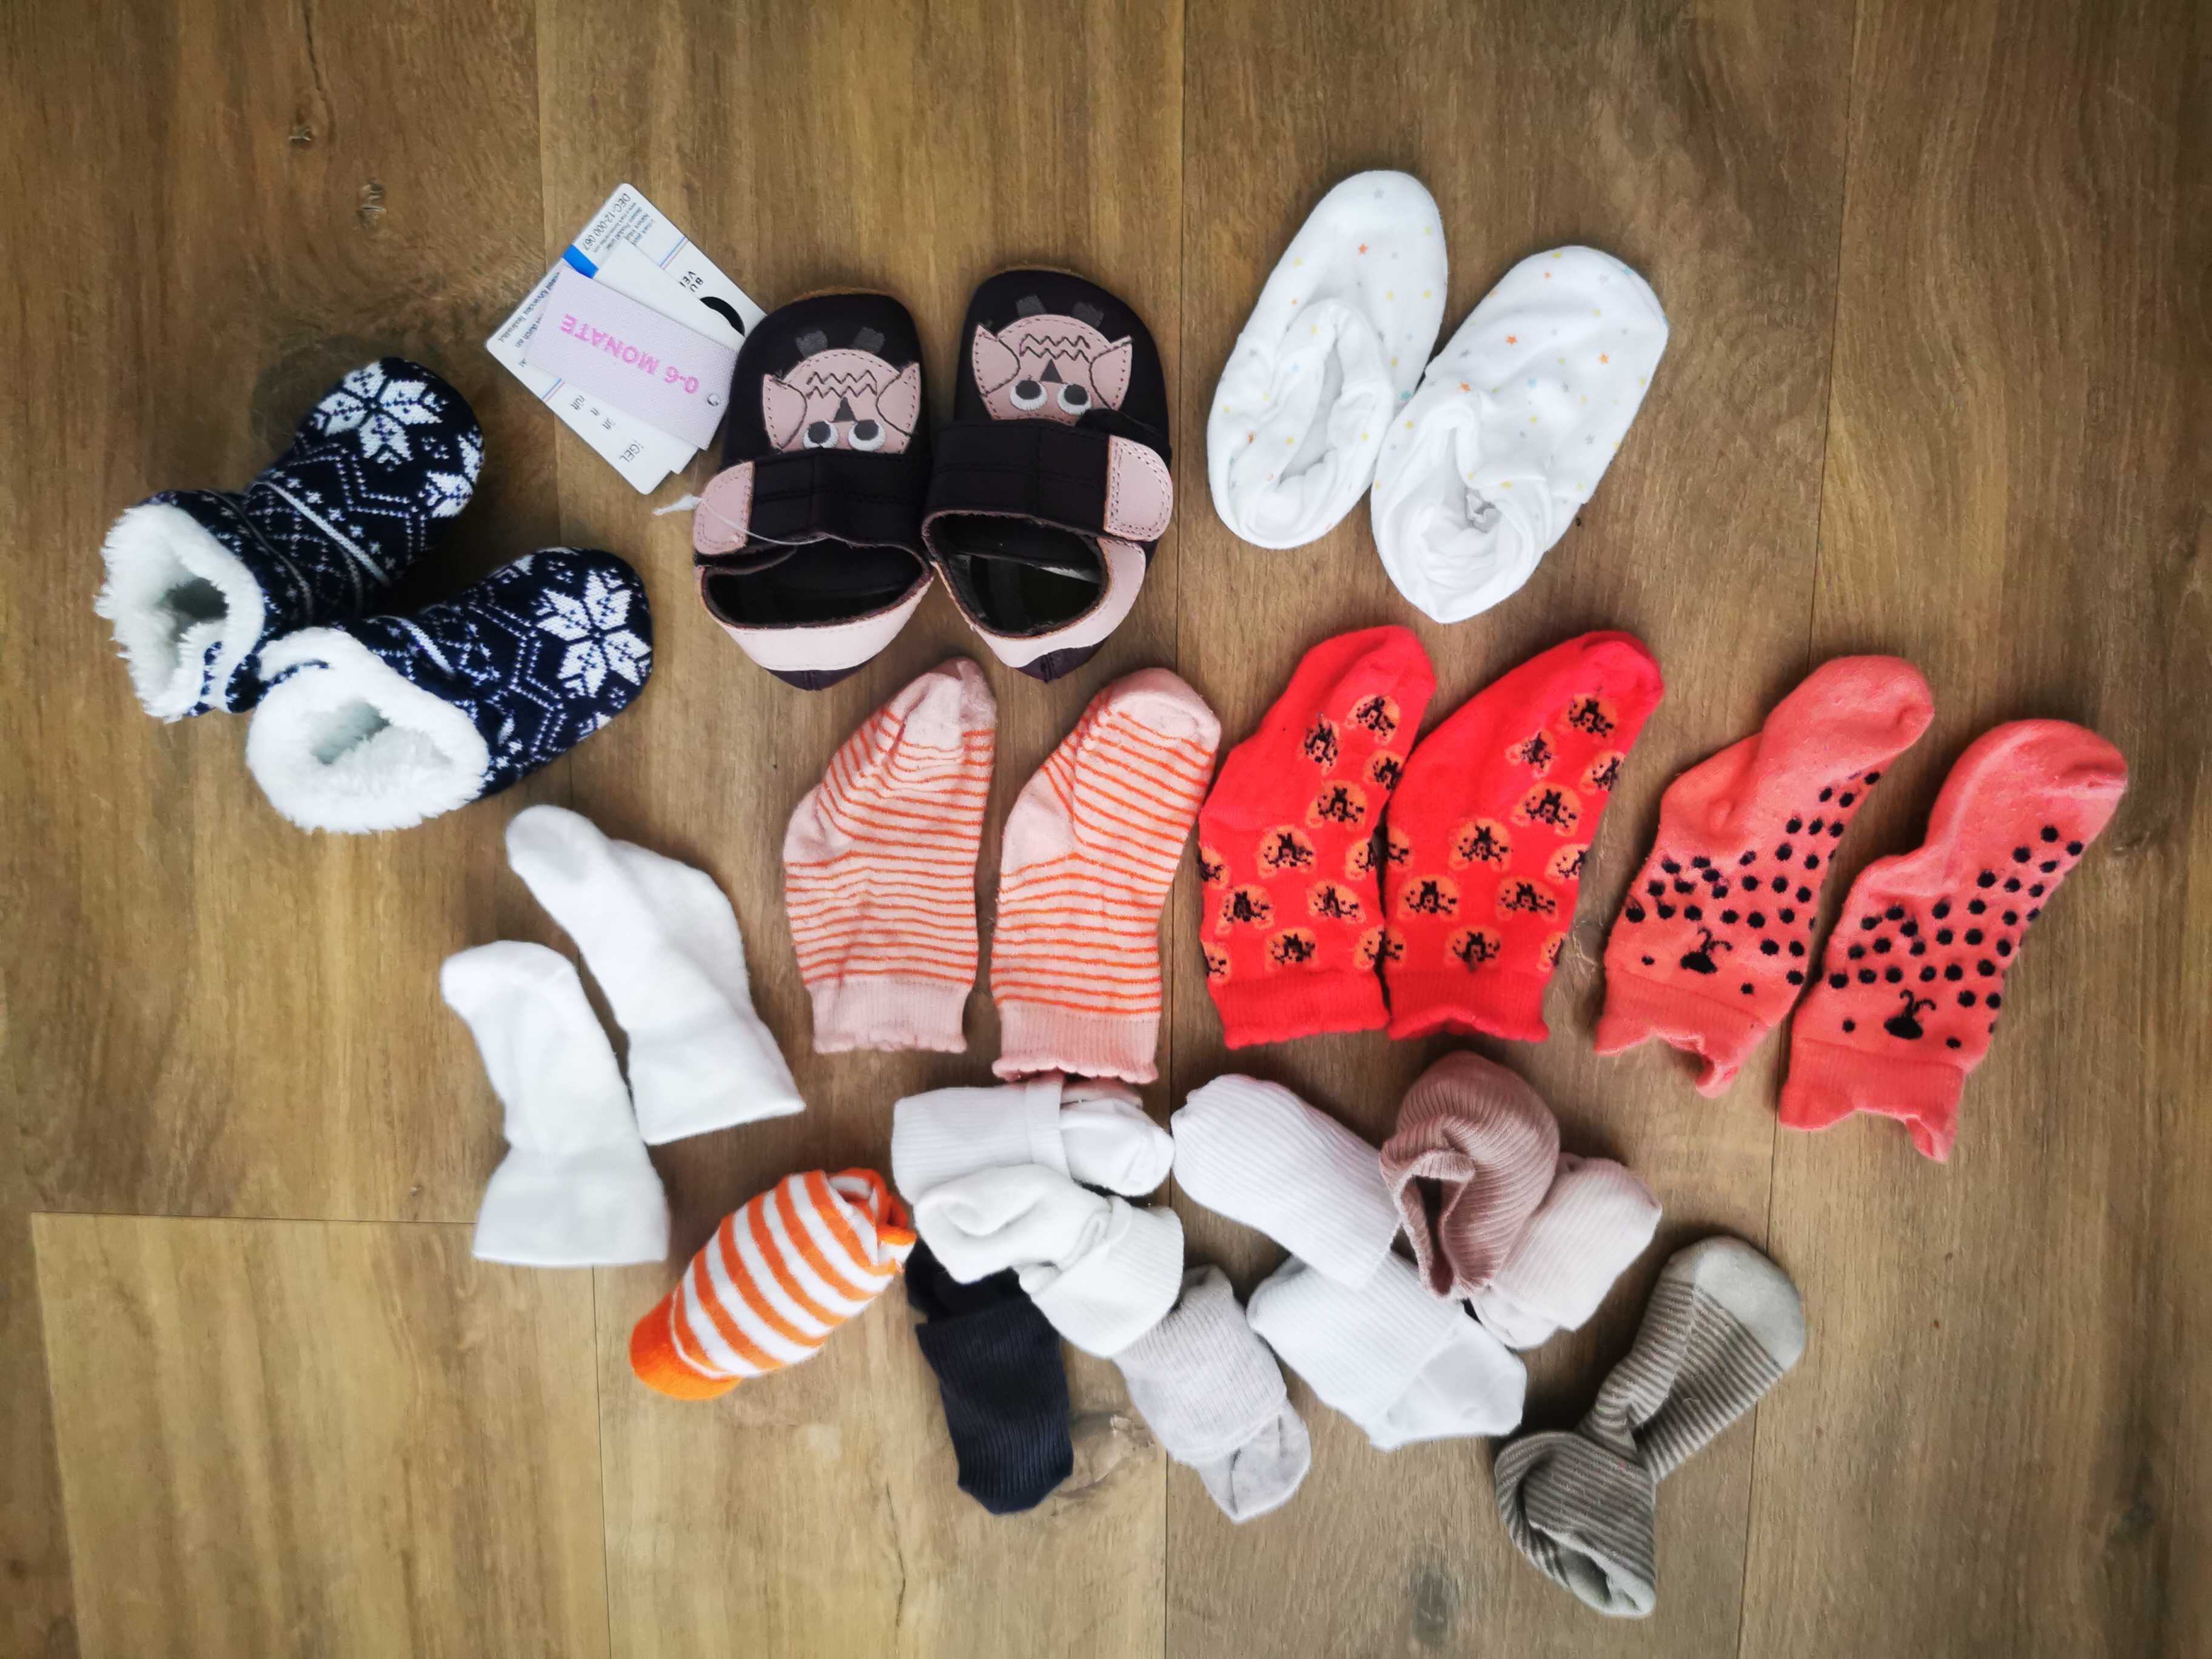 Skarpetki i buciki skórzane dla niemowlaka- wszystko co na zdjęciach